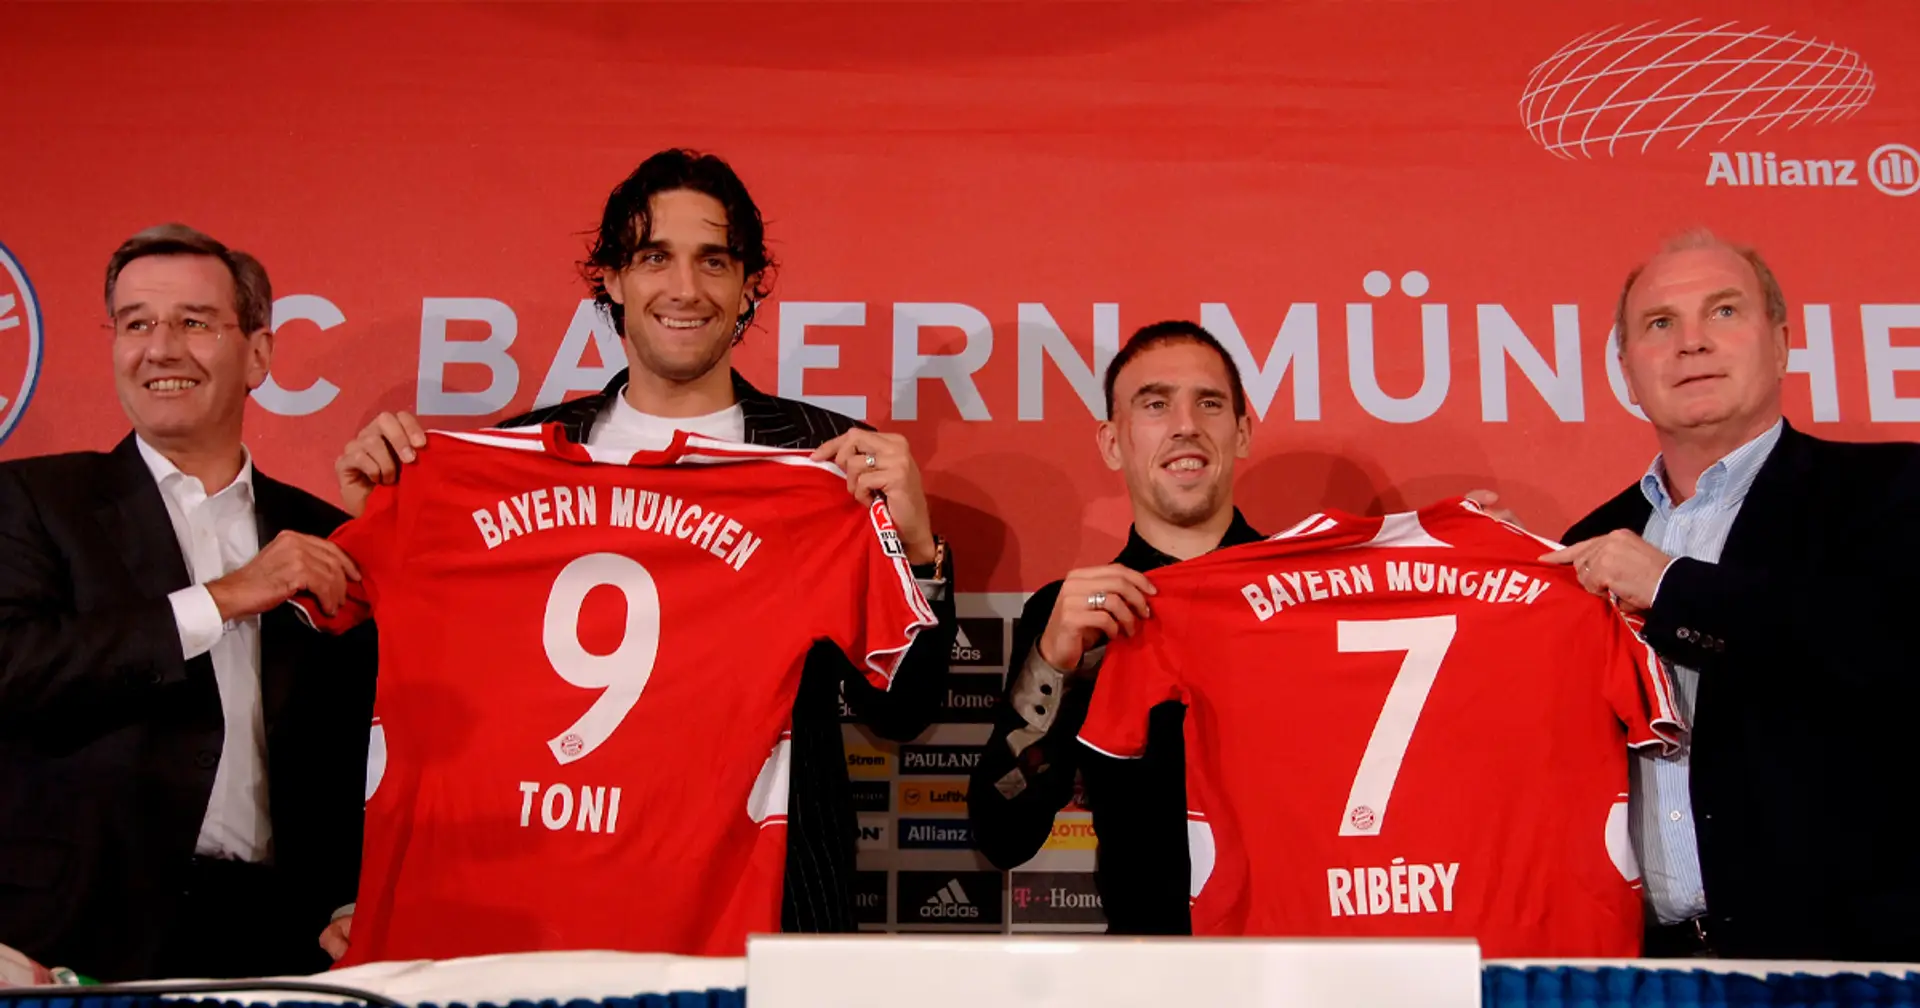 41 Mio. Euro für Ribery und Toni: Vor 16 Jahren schrieb Bayern Geschichte mit 2 Transfers